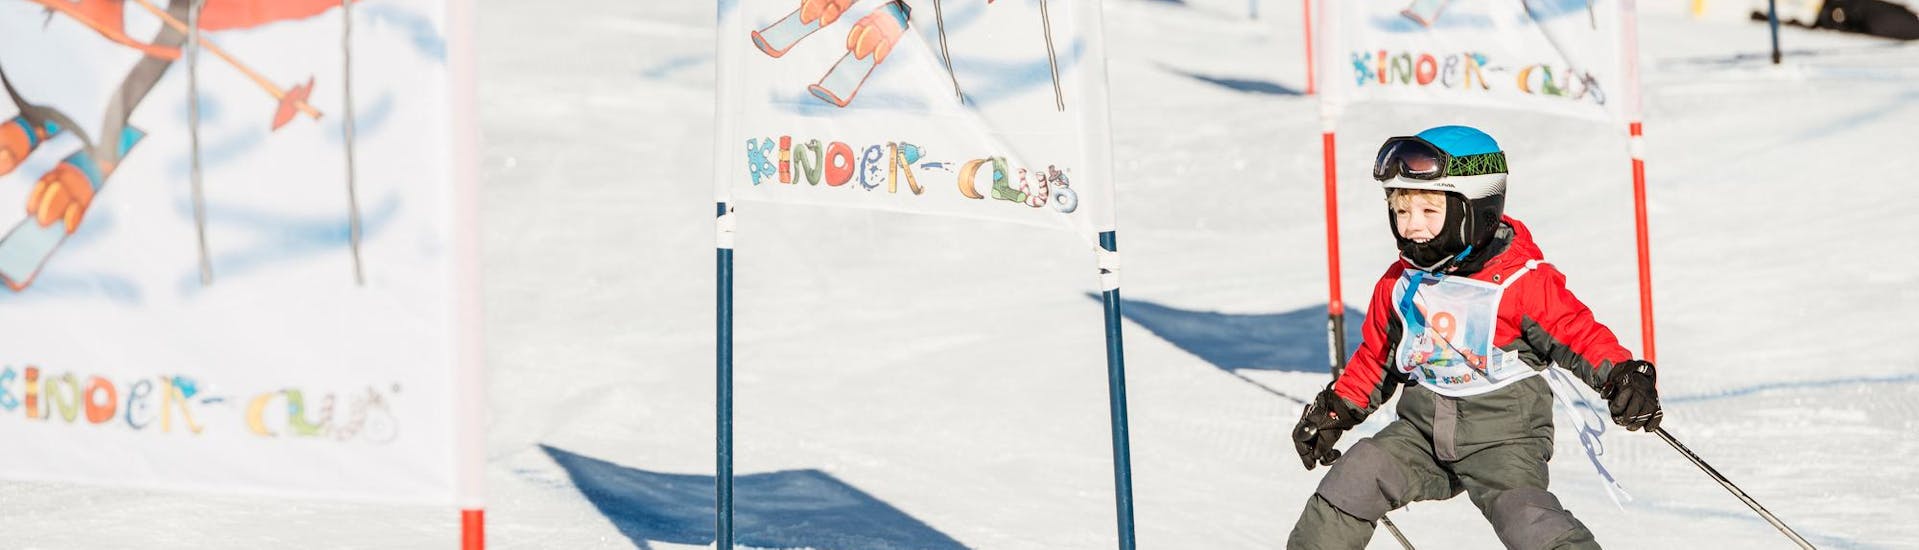 Ein kleiner Skifahrer fährt während dem Kinder-Skikurs "BOBO´s Kids-Club" für Anfänger mit der Skischule Busslehner Achkirch die Piste im Kinderland hinunter.